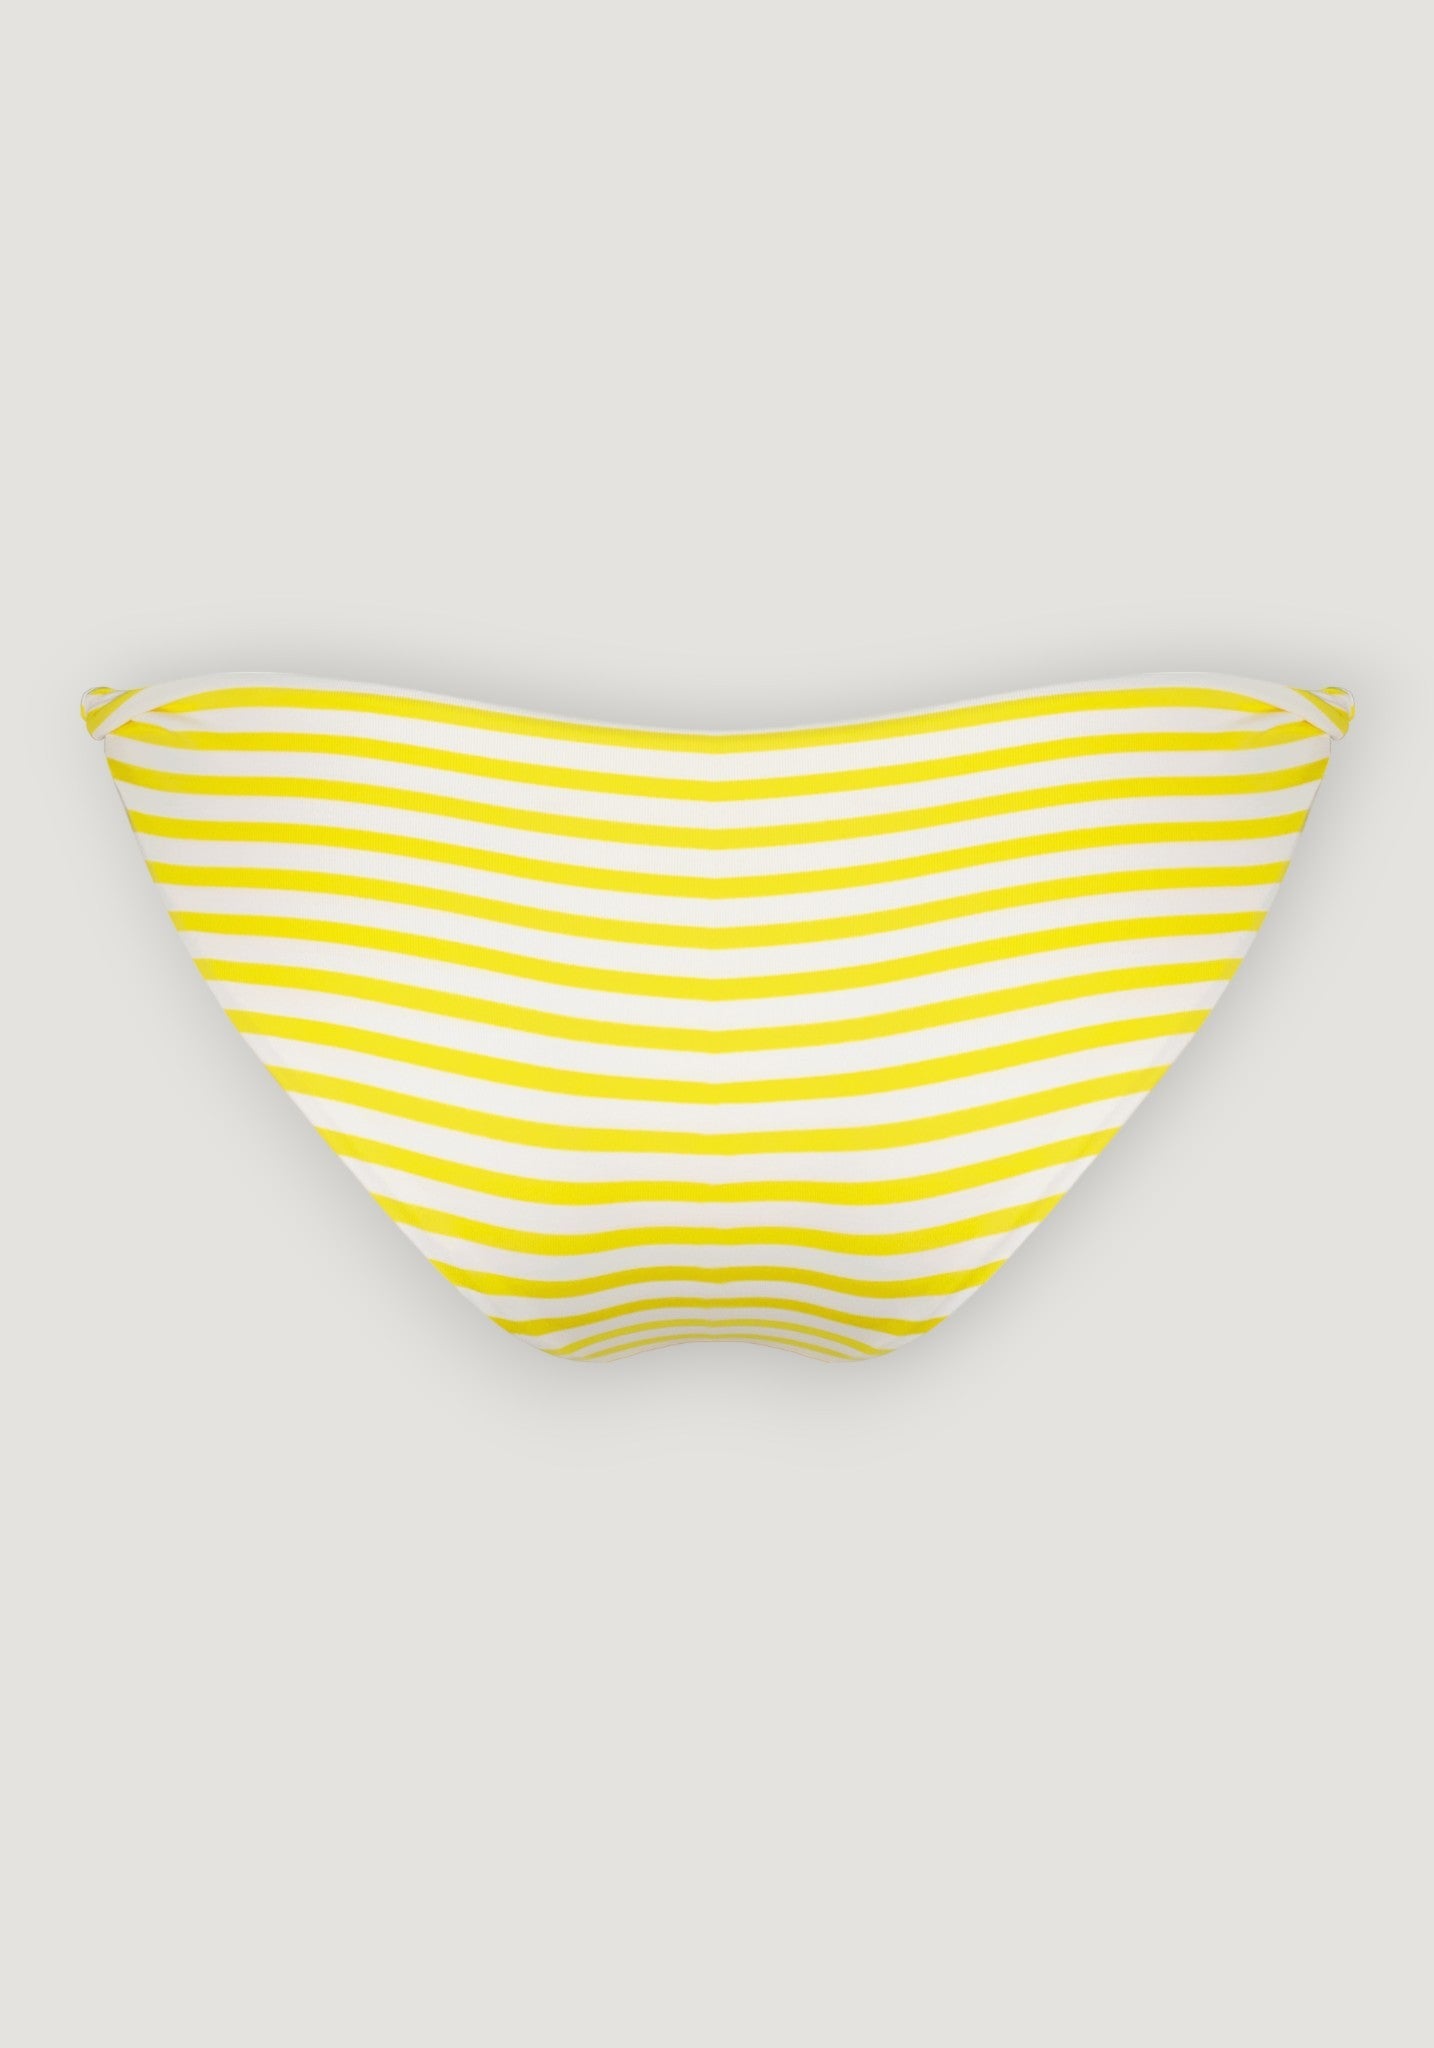 Slip baie femei protecție UV - Abril Canary Stripe Canopea HipHip.ro